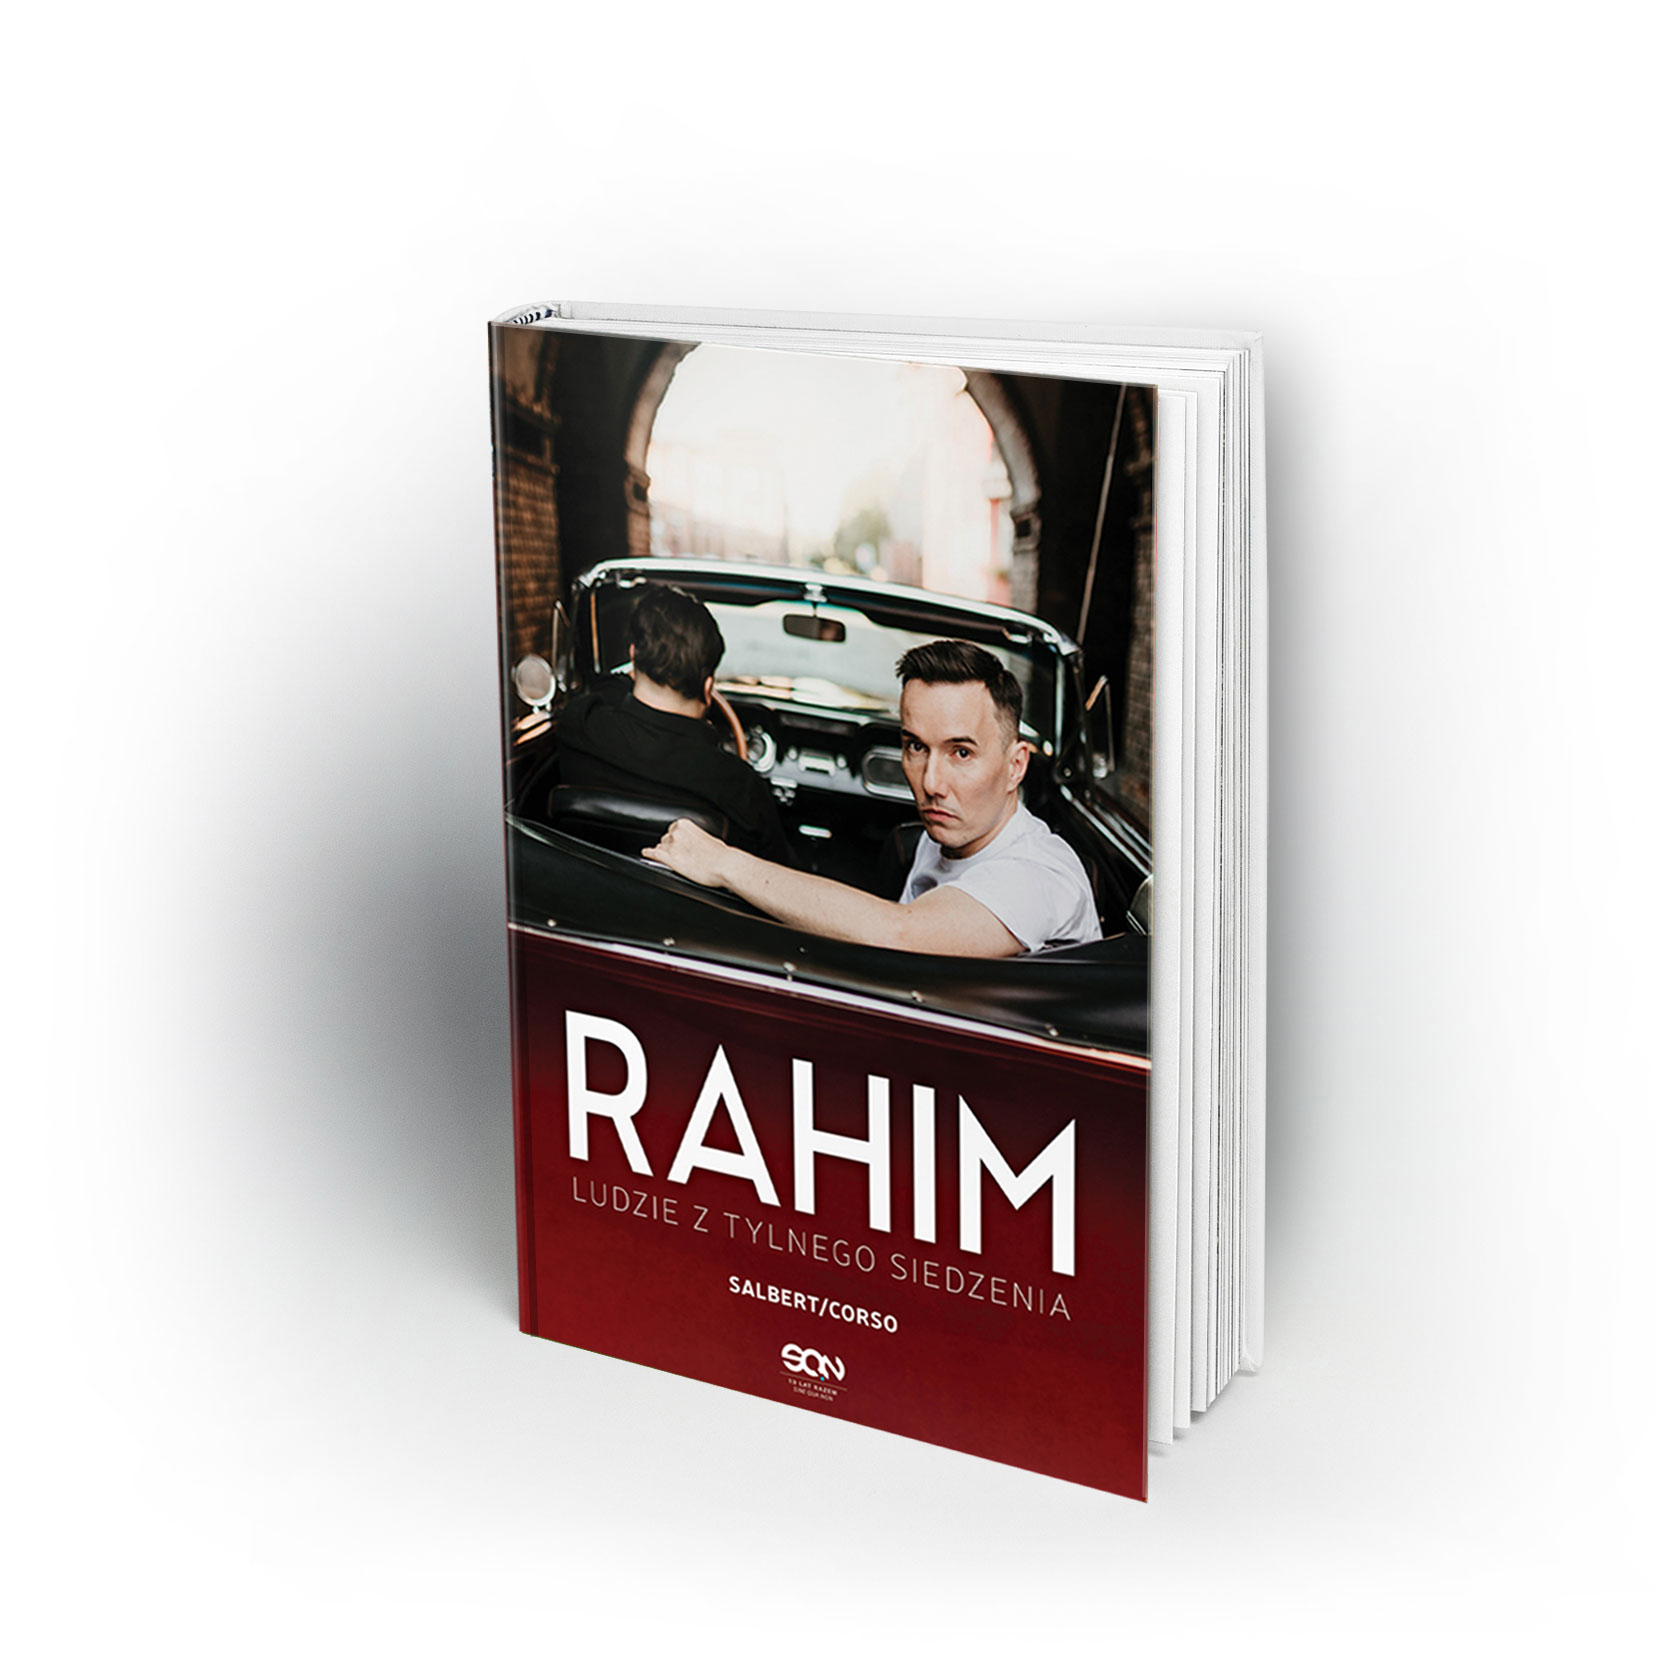 Rahim - Ludzie z tylnego siedzenia - Przemek Corso